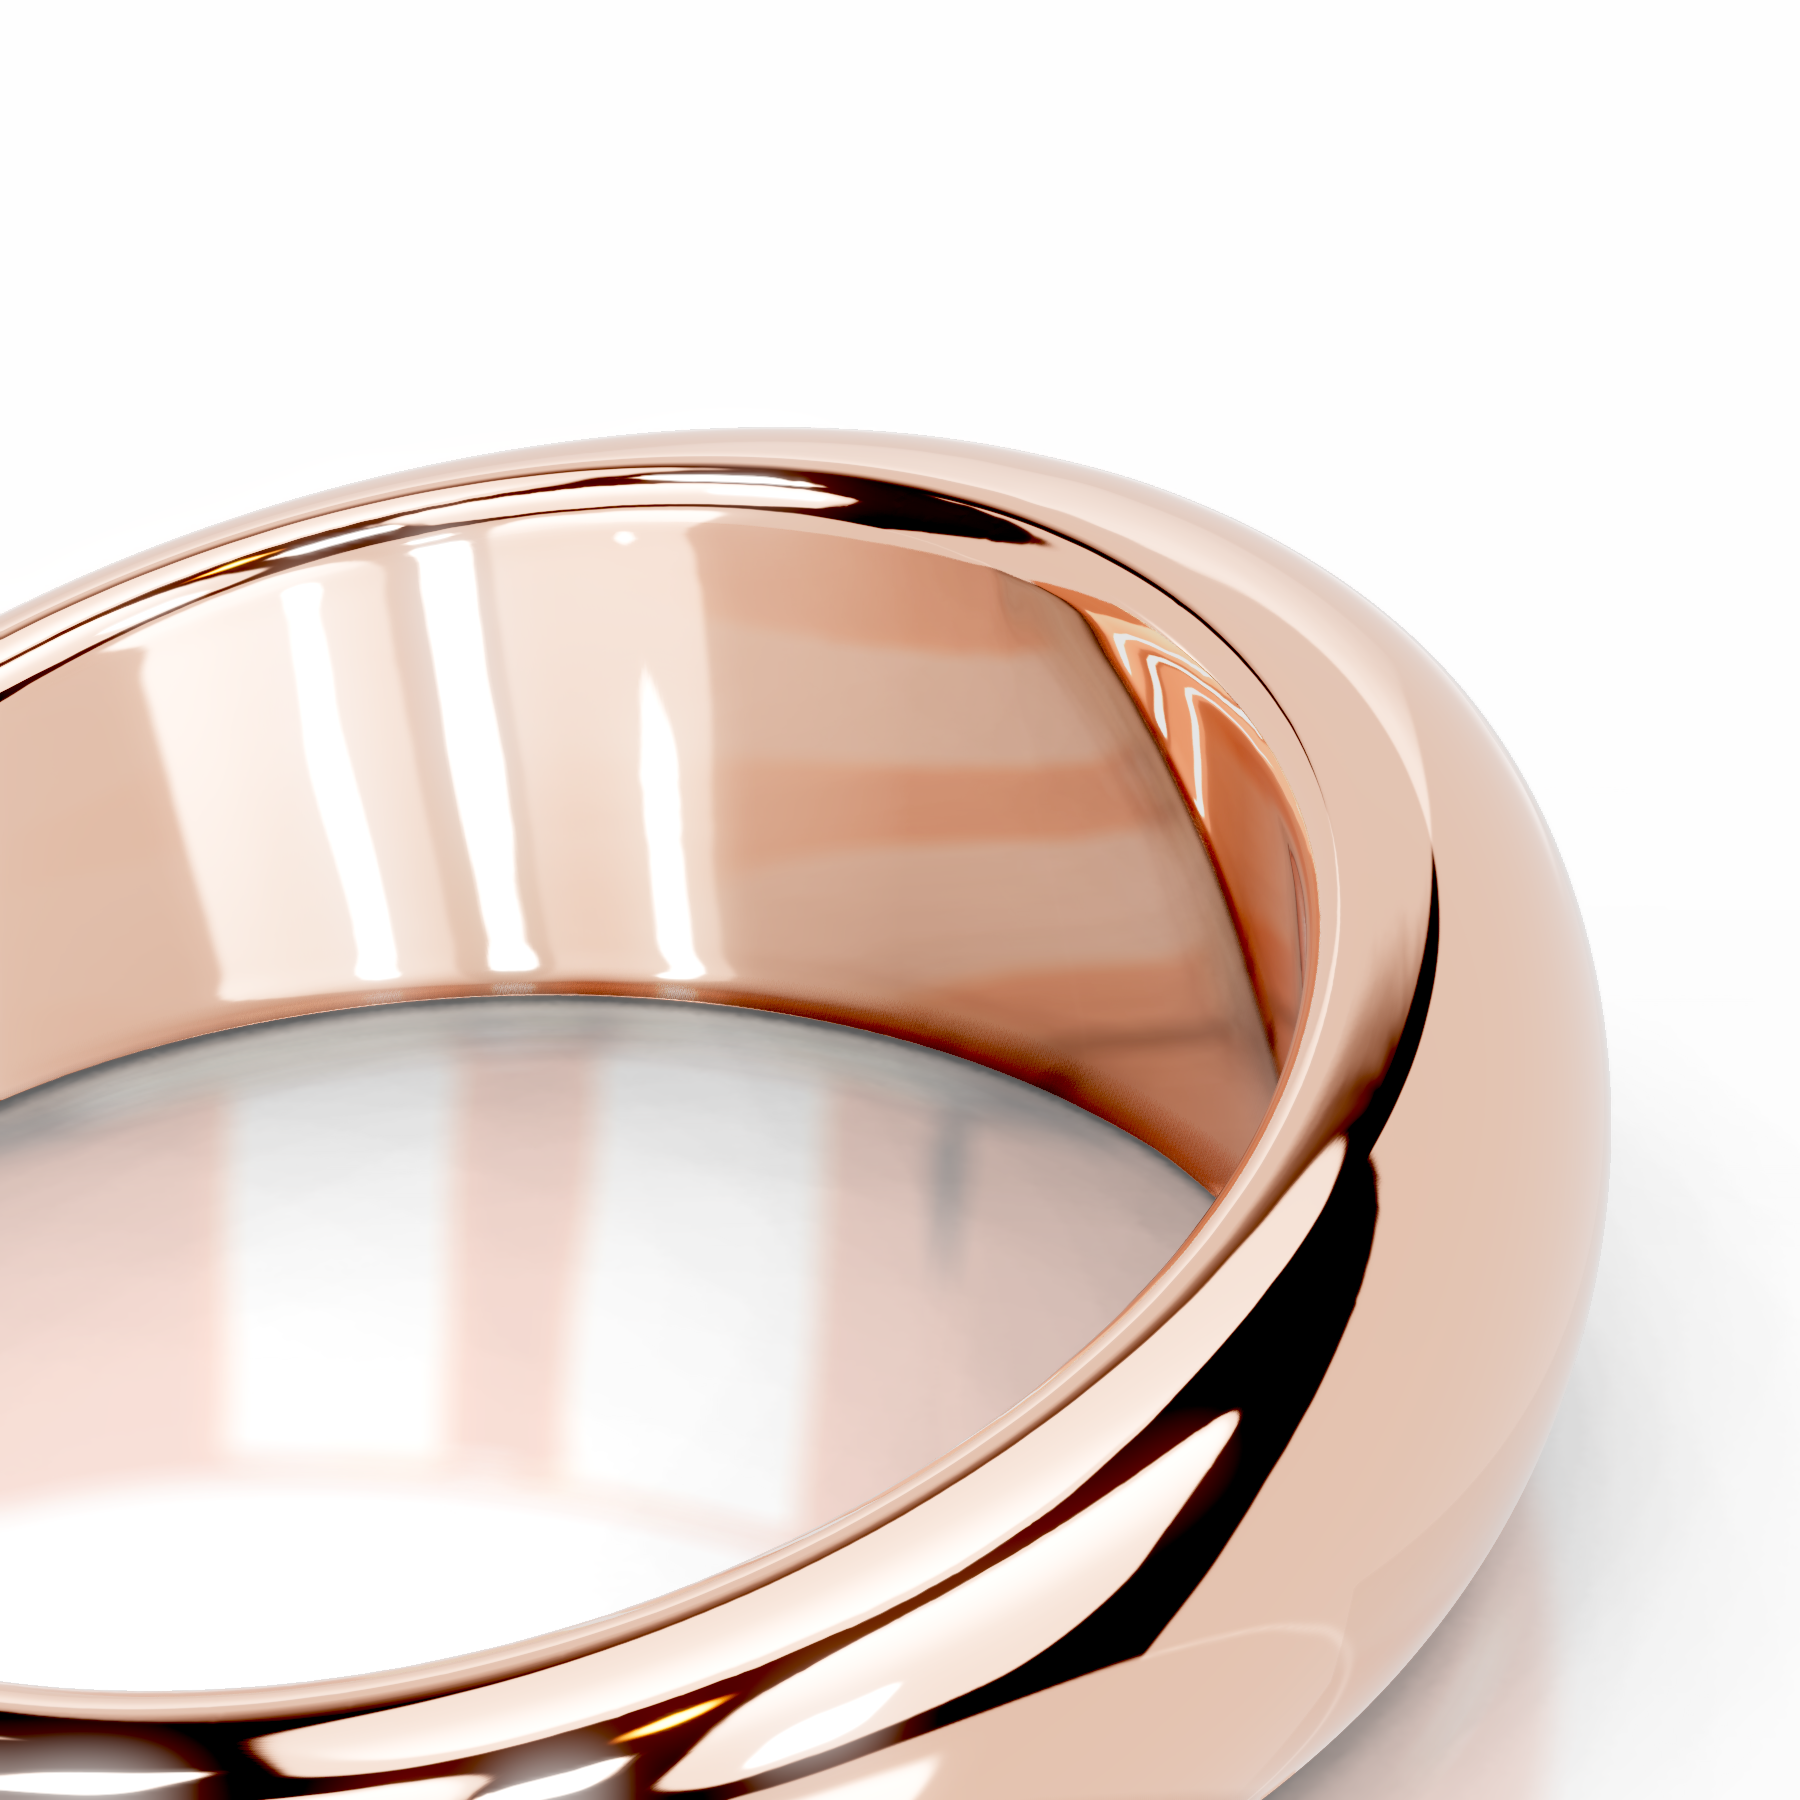 Amari Diamond Engagement Ring   (1 Carat) -14K Rose Gold